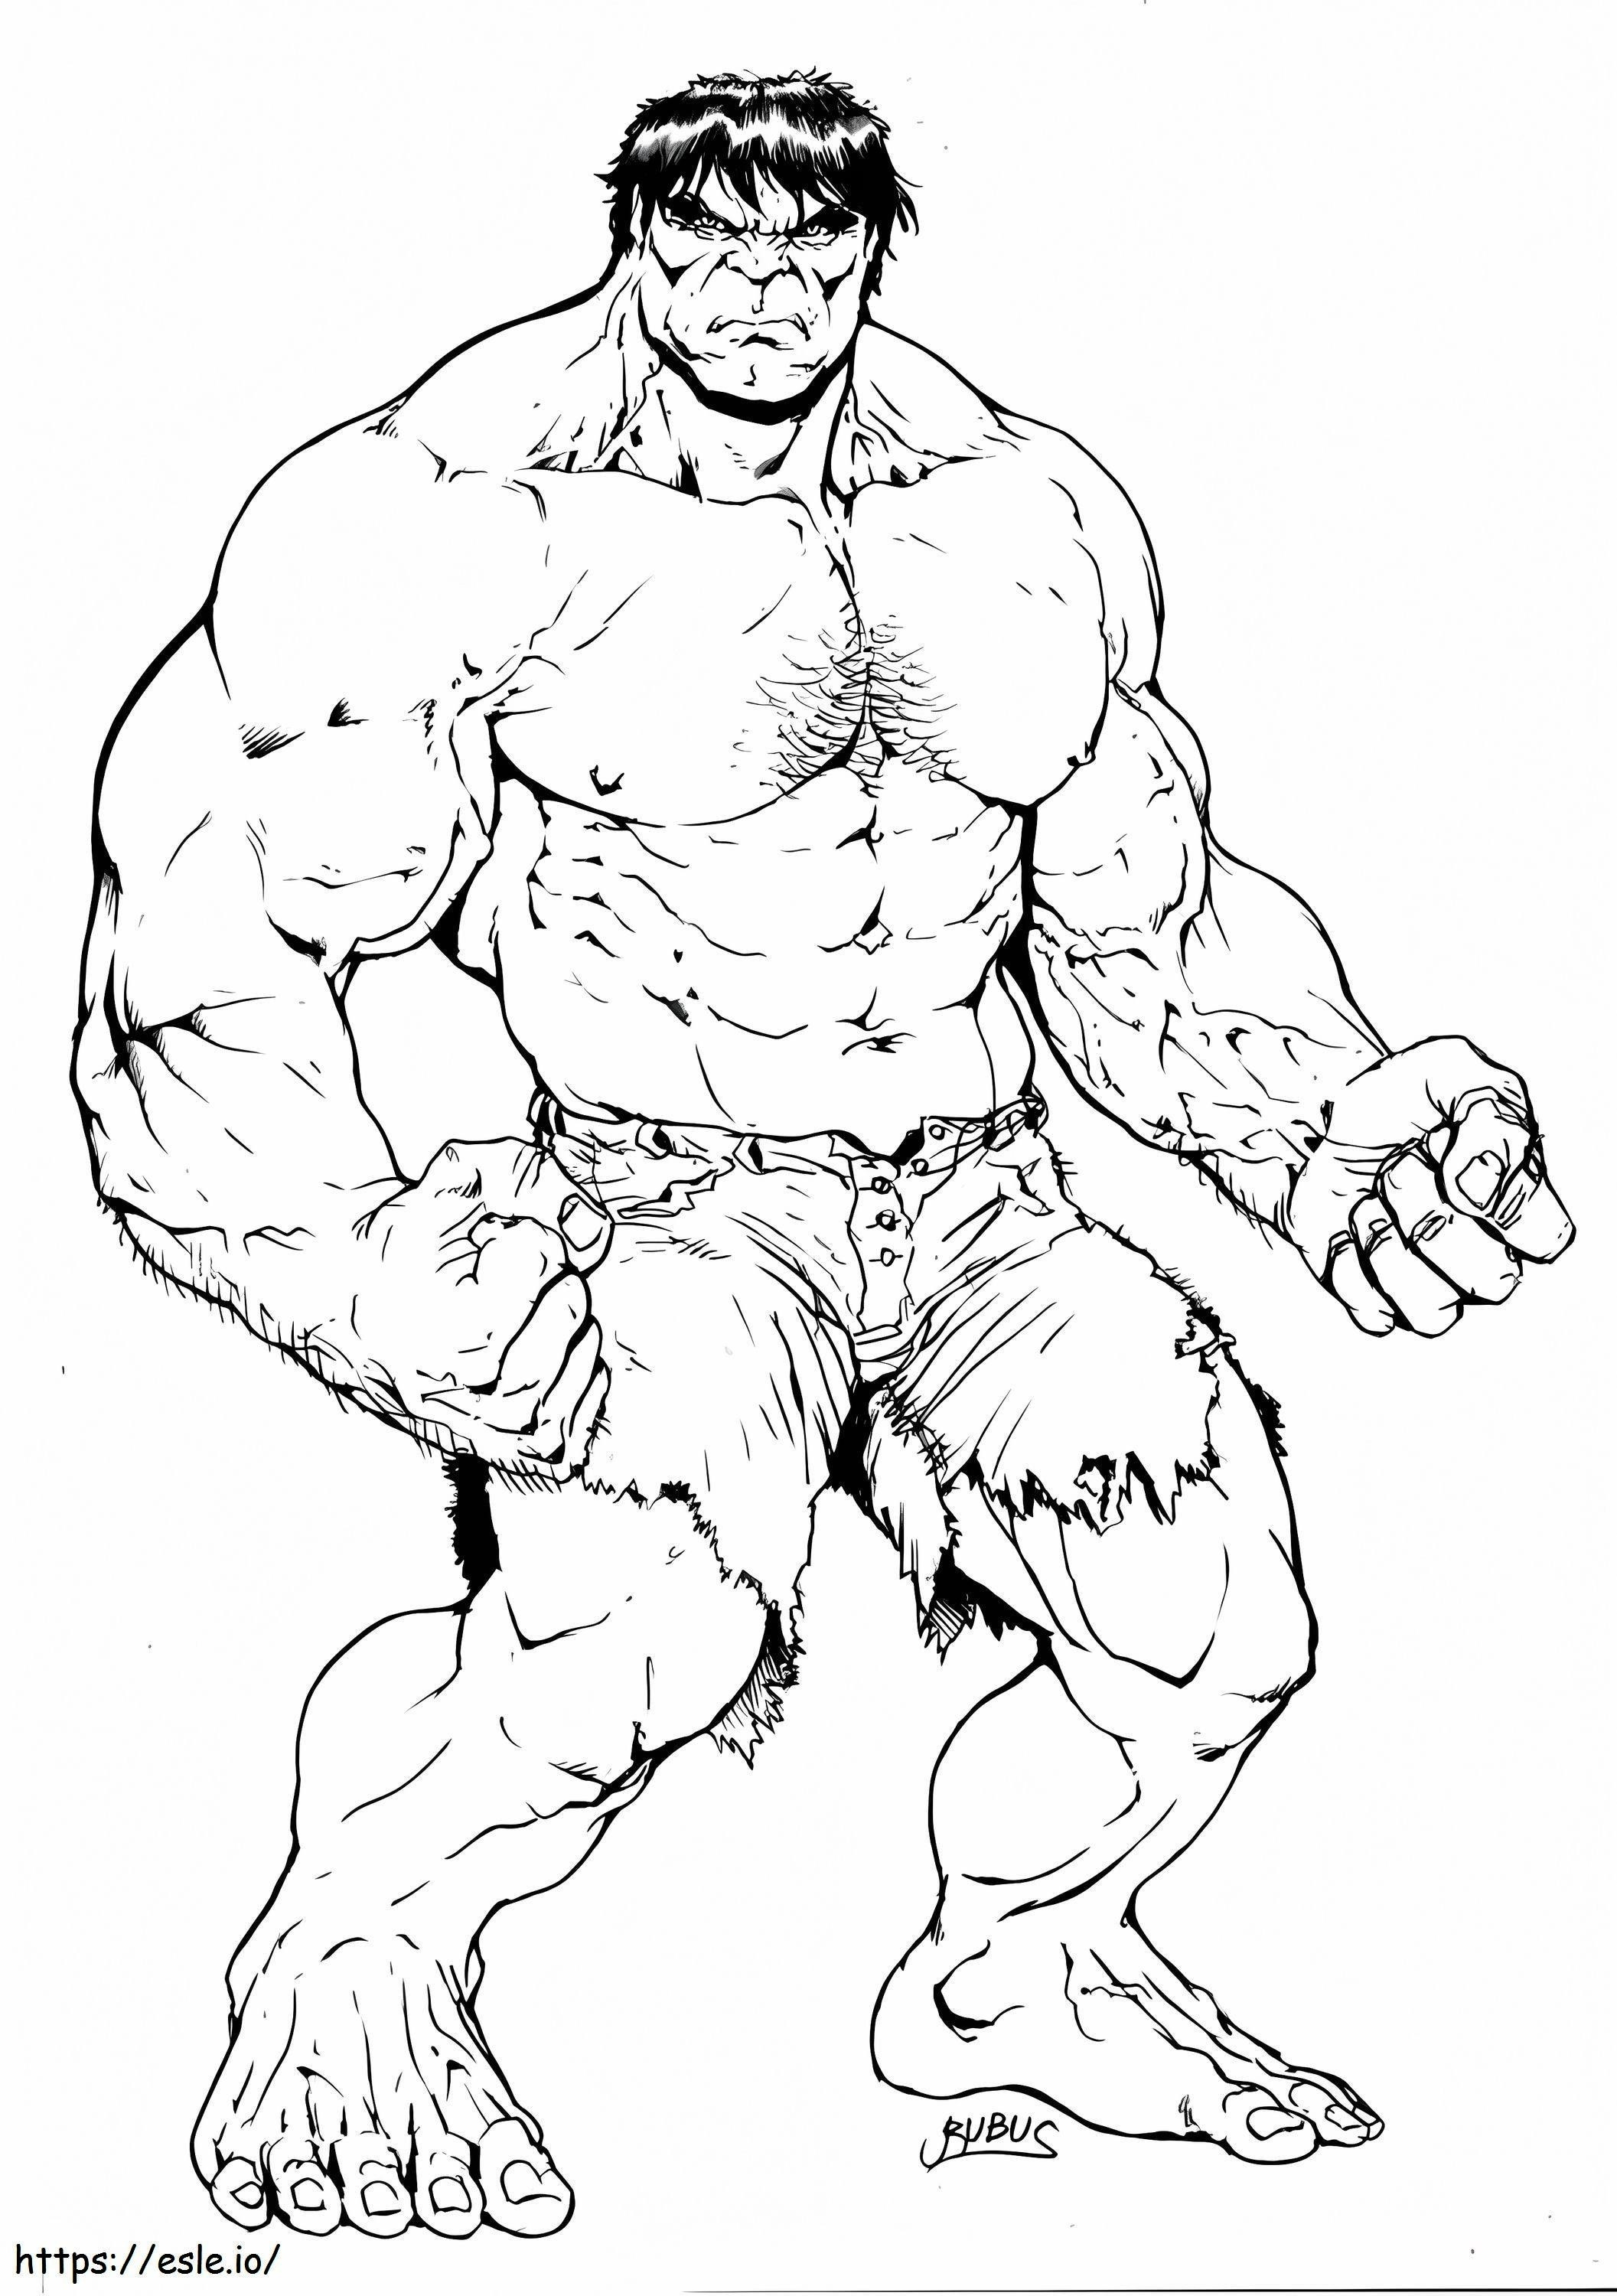 Büyük Hulk boyama